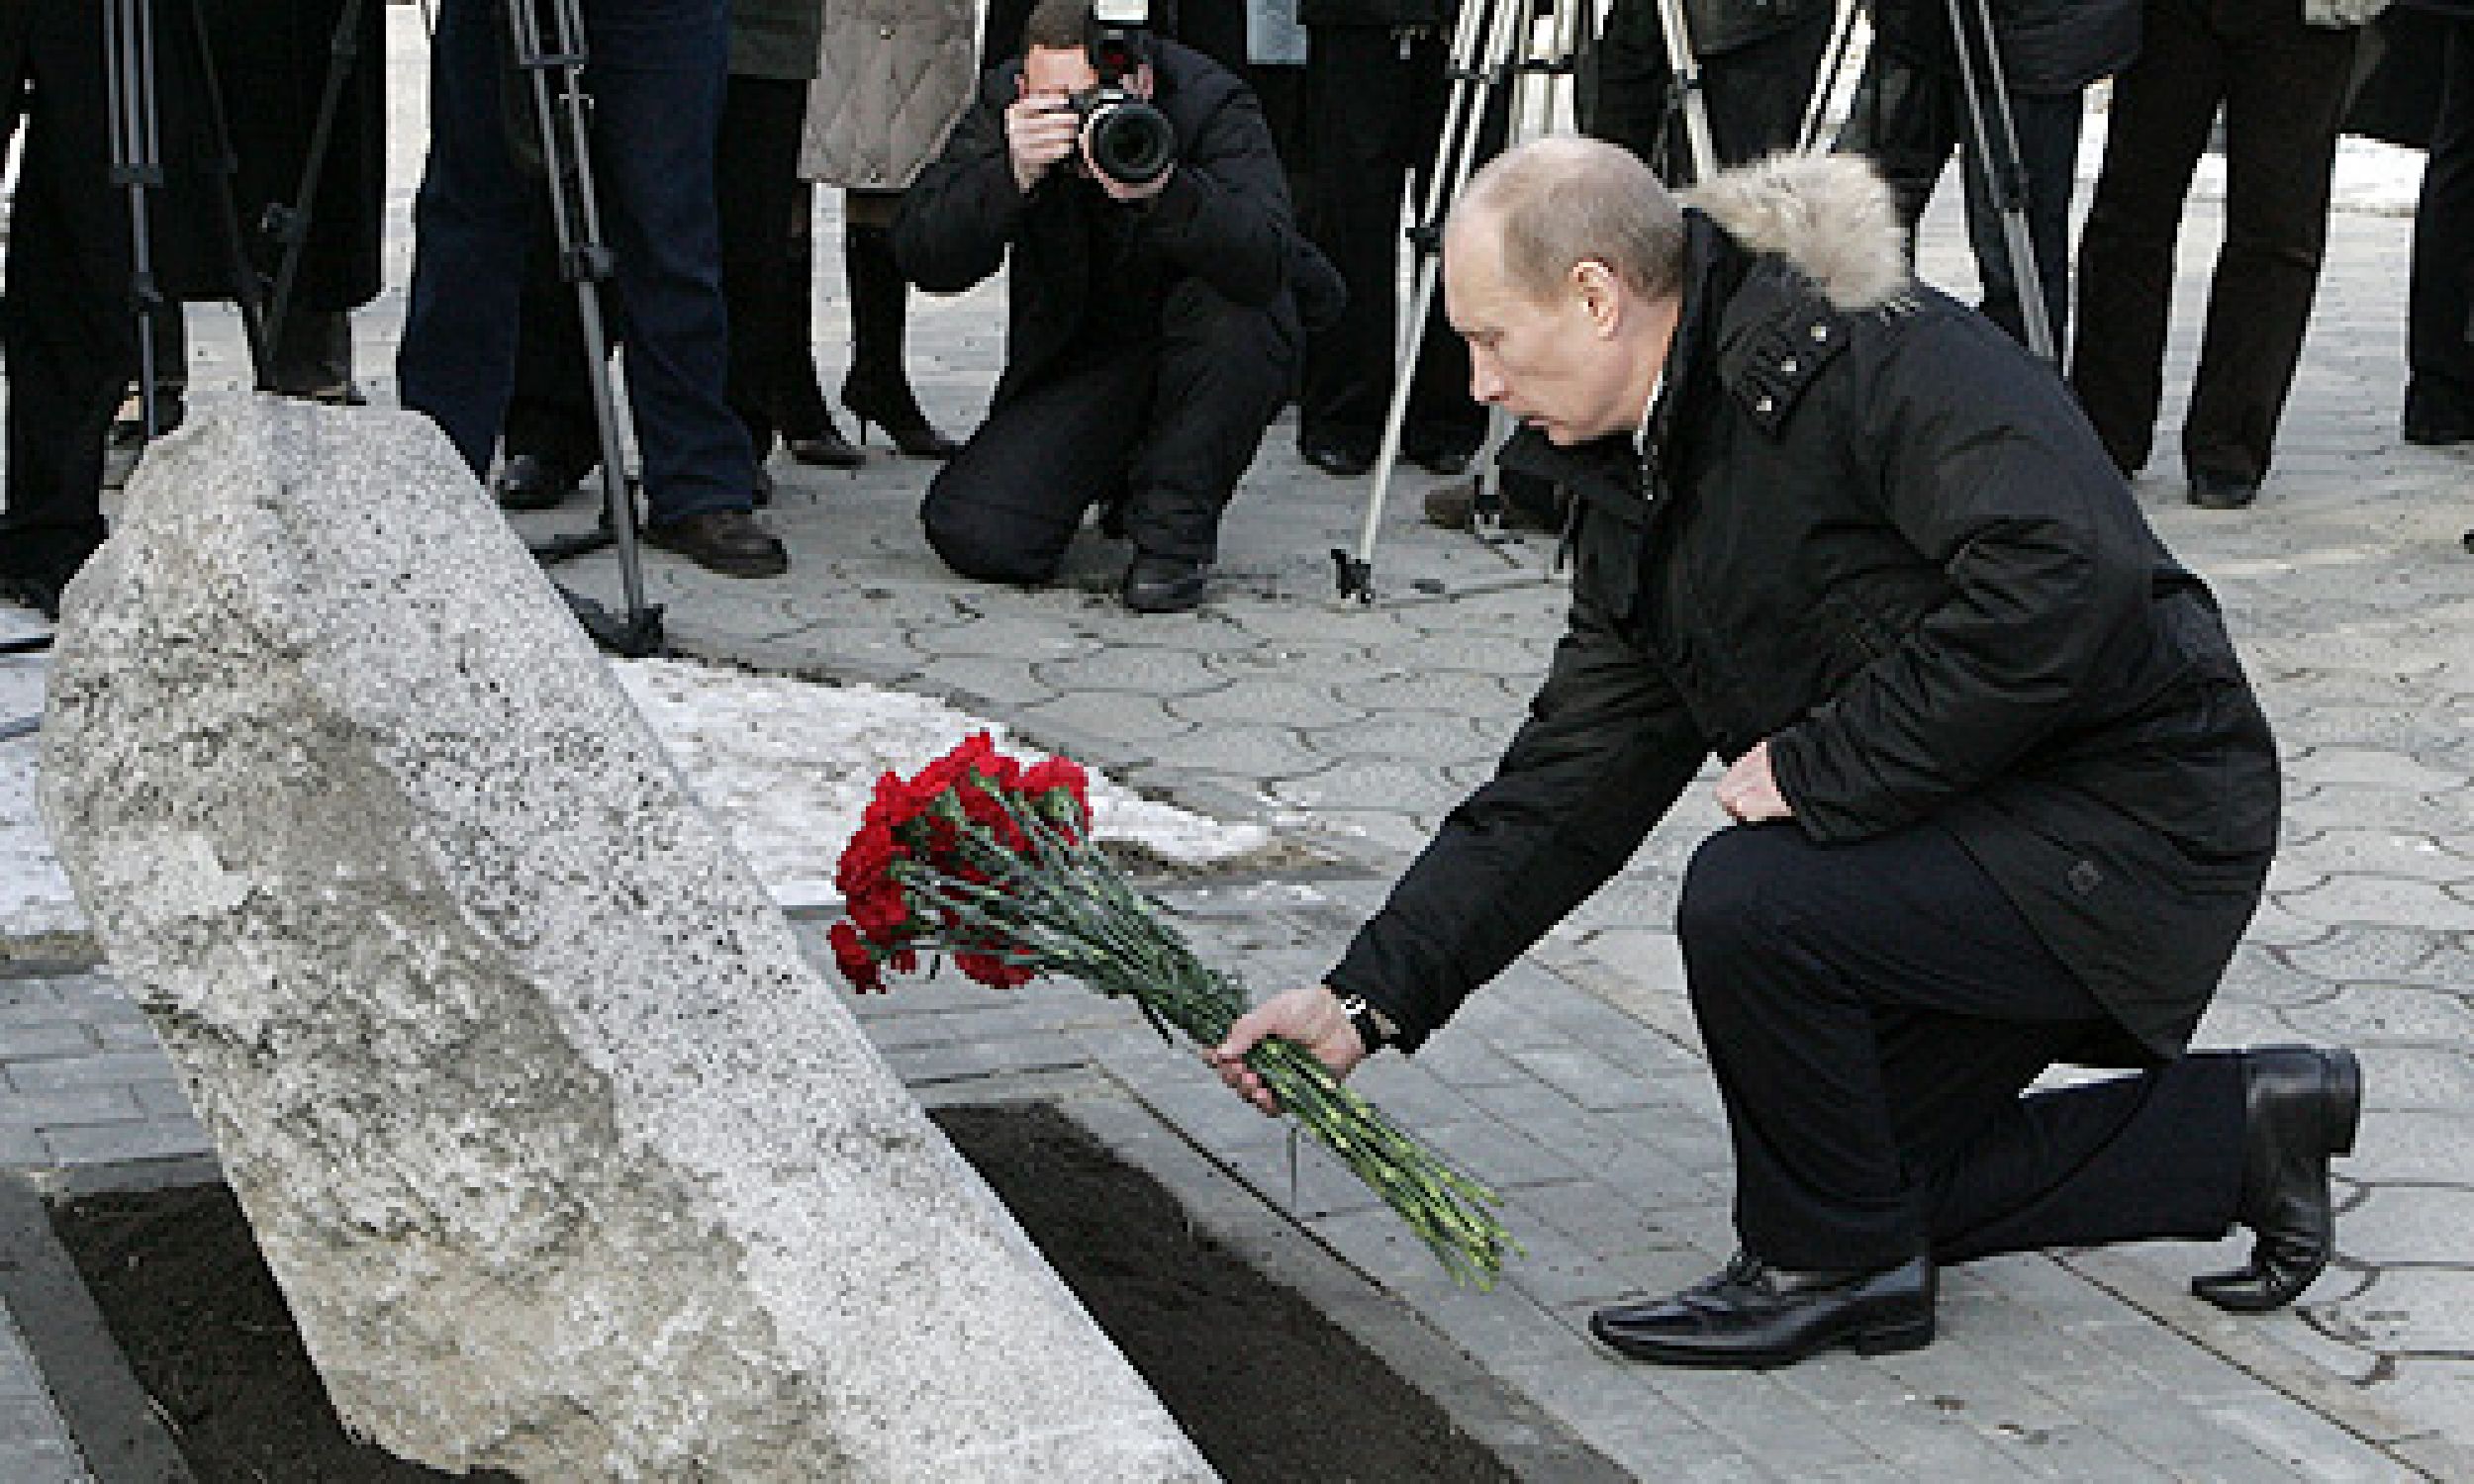 W 2008 roku w miejscu tragedii złożył wiązankę róż prezydent Władimir Putin. Fot. Wikimedia/Автор: Kremlin.ru, CC BY 4.0